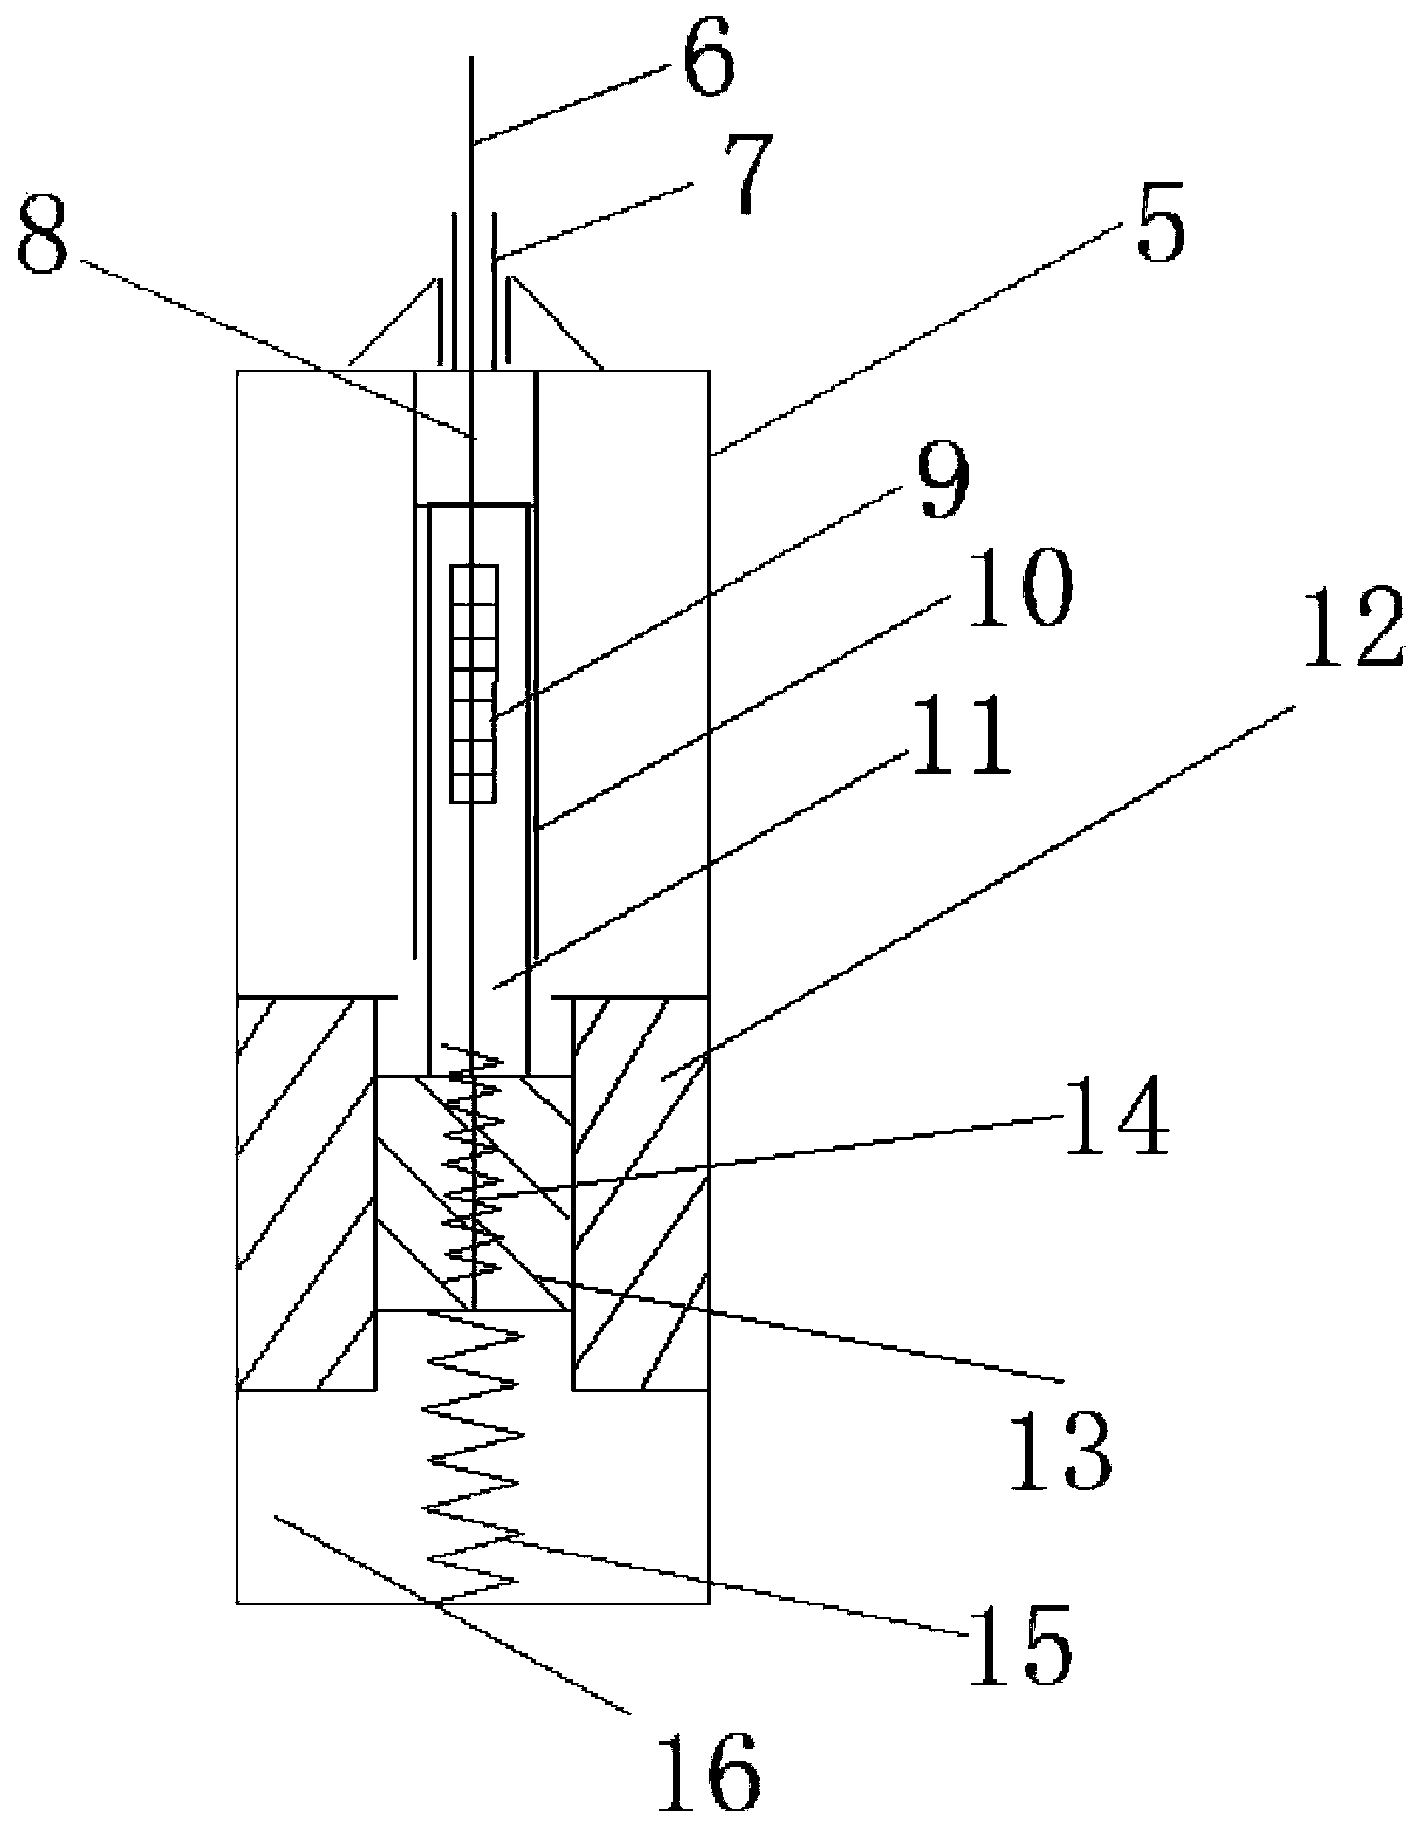 A three-component fiber grating vibration sensor